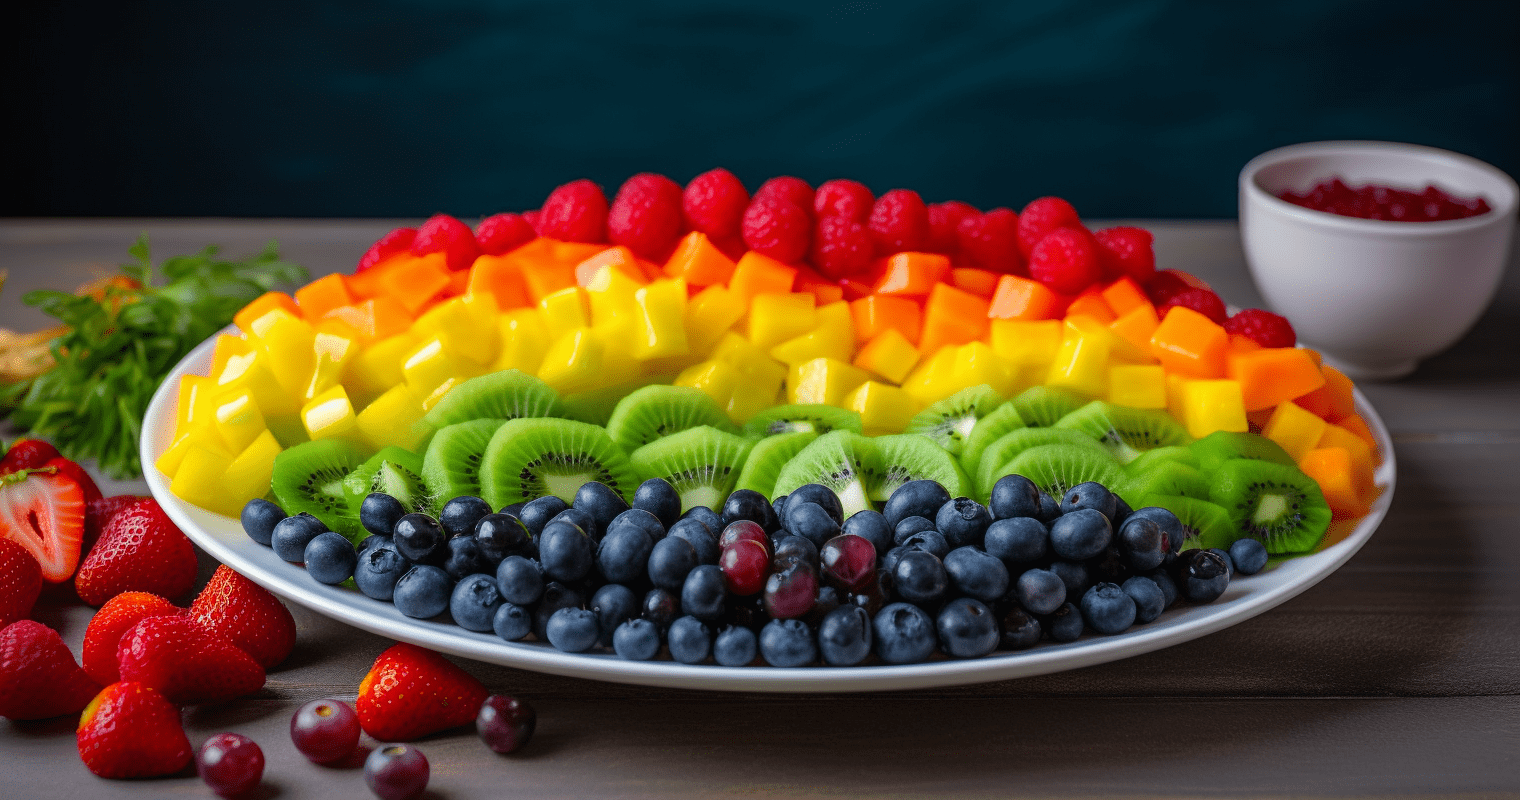 Rainbow Fruit Salad Image